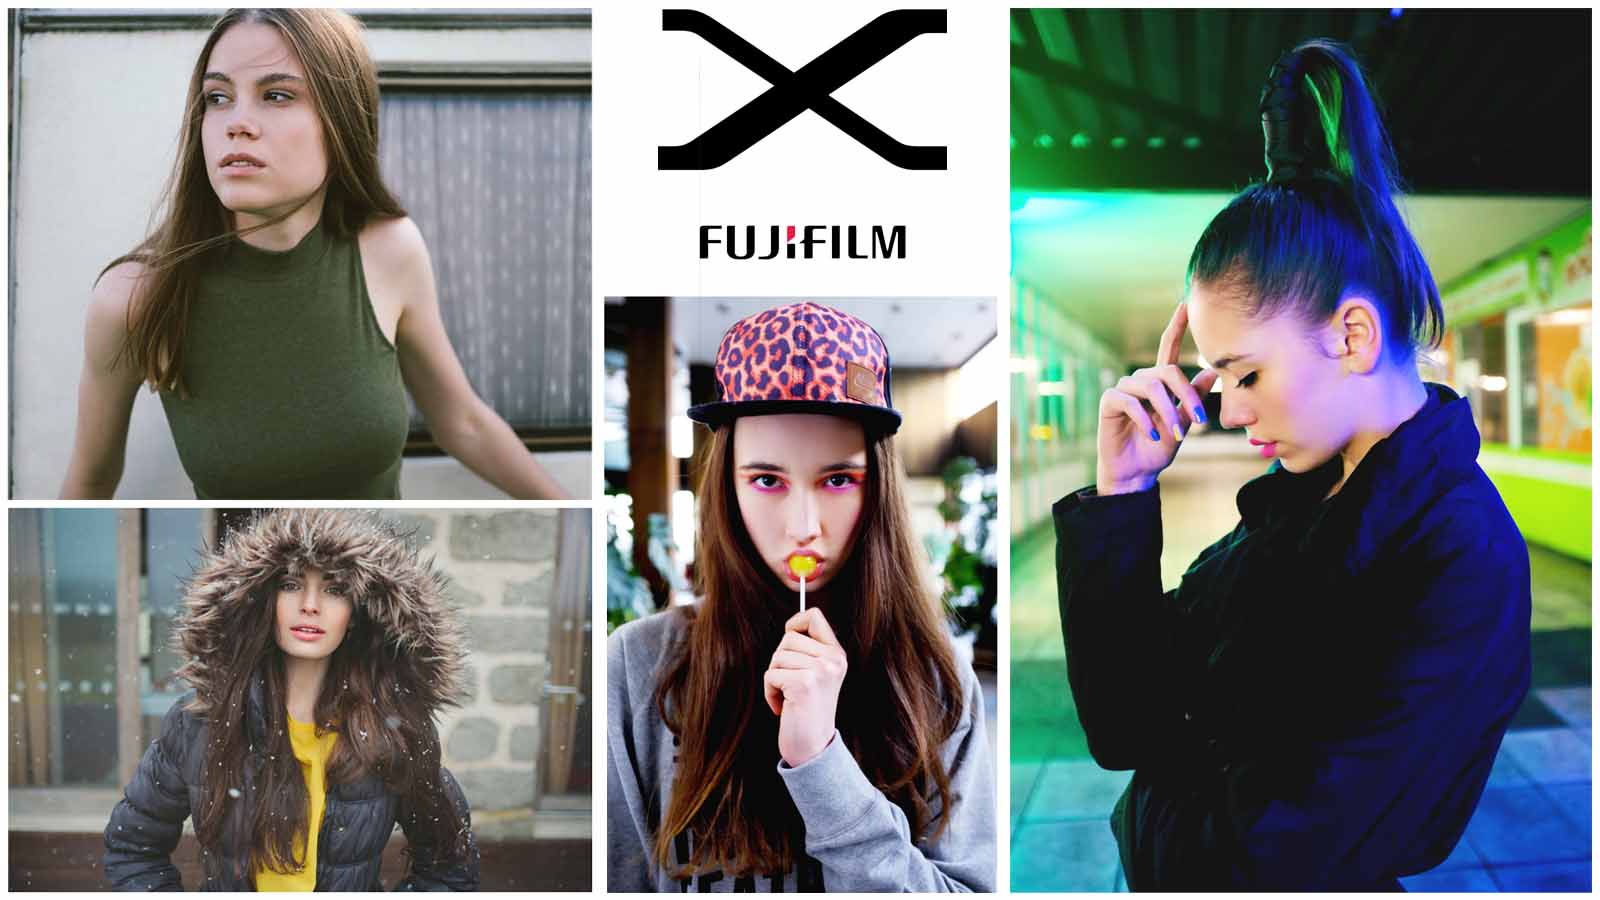 FOTOLAB fotokurzy Fujifilm